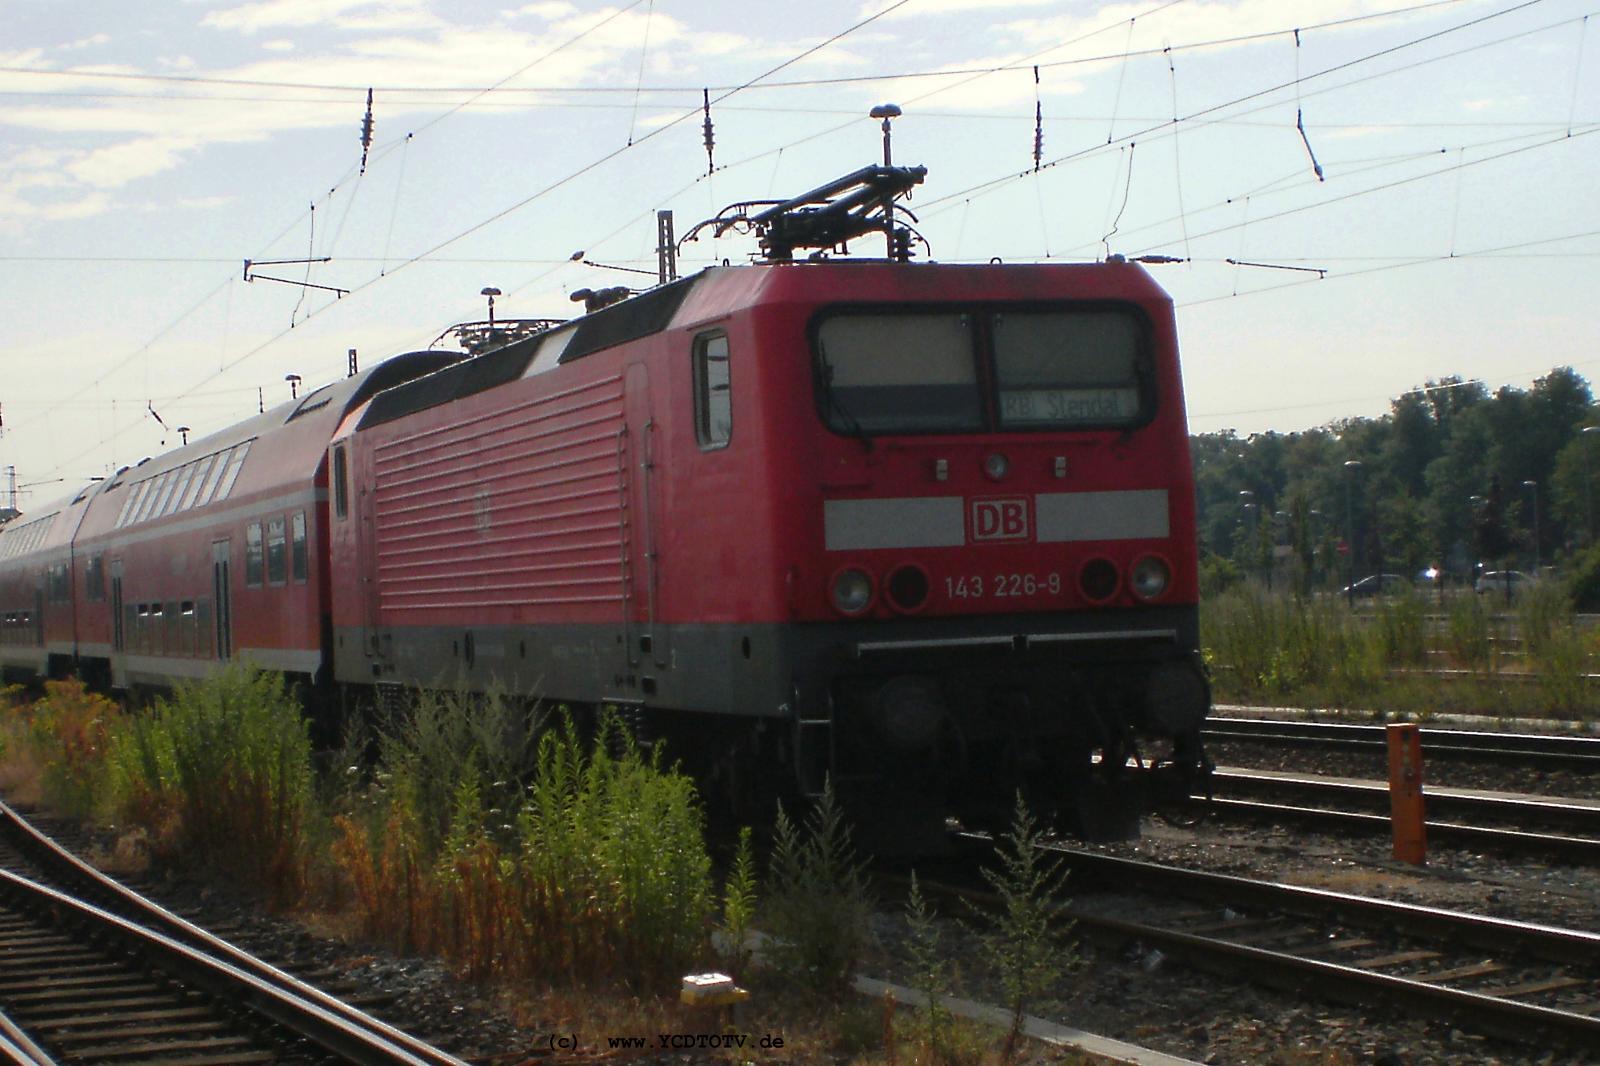 Bahnhof Stendal 10.07.2010, 143 226-9 